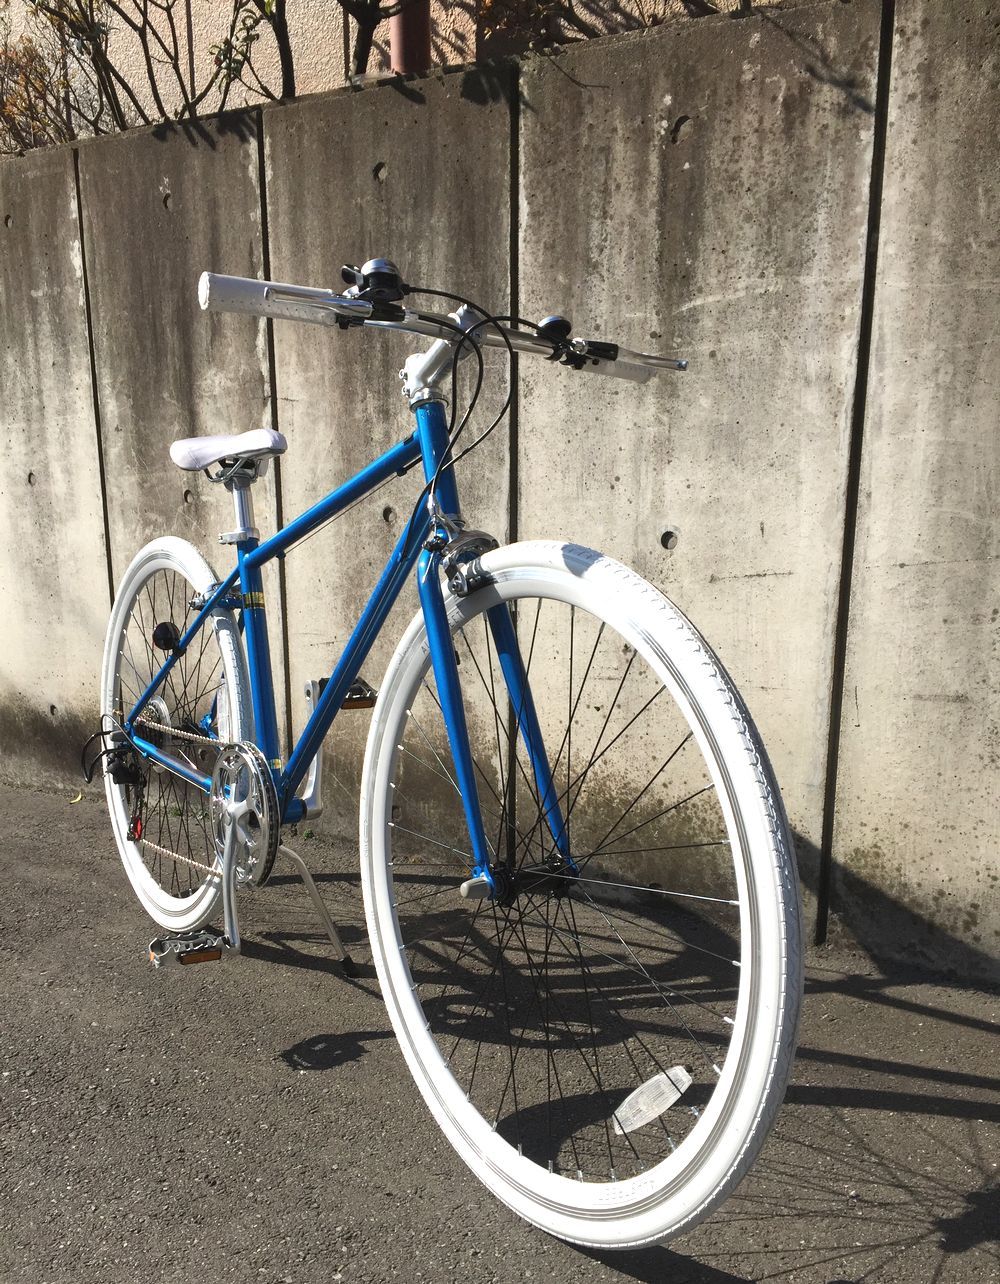 シンプルなスタイルと豊富なカラーが魅力♪「サカモトテクノ・700Cオールストリート6S」 | 西船橋・海神の自転車屋「サイクルプラス」のブログ